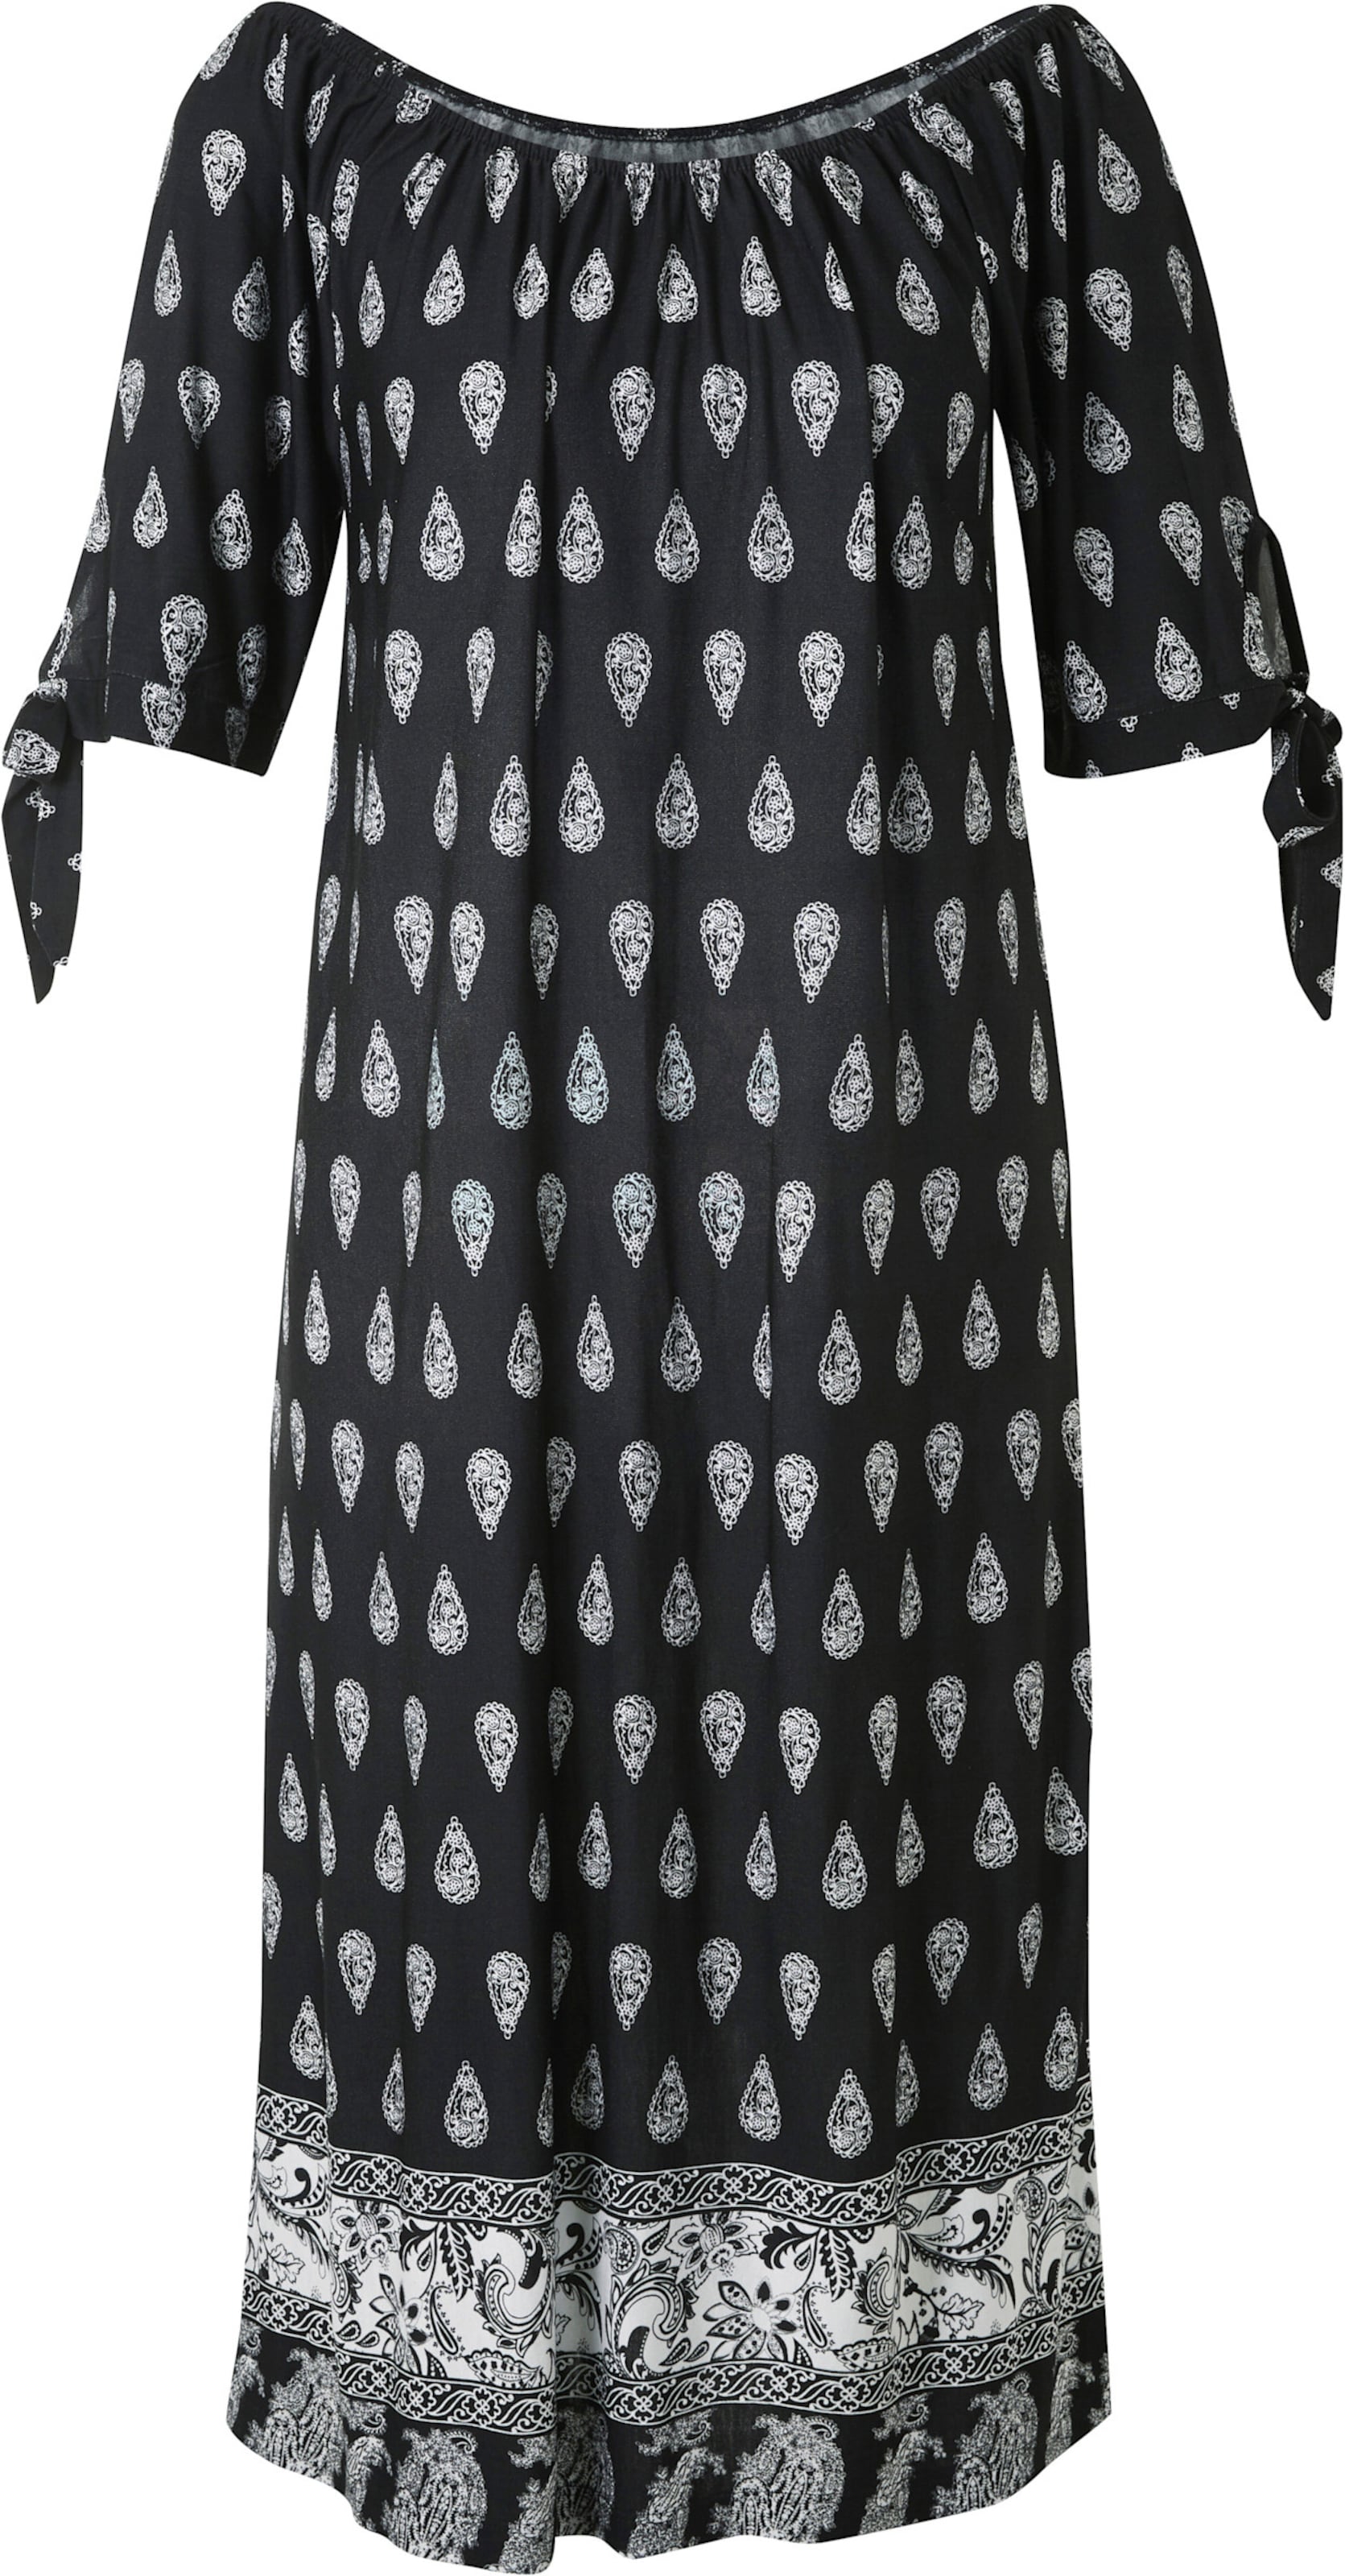 Druck-Kleid in schwarz-weiss-bedruckt von heine